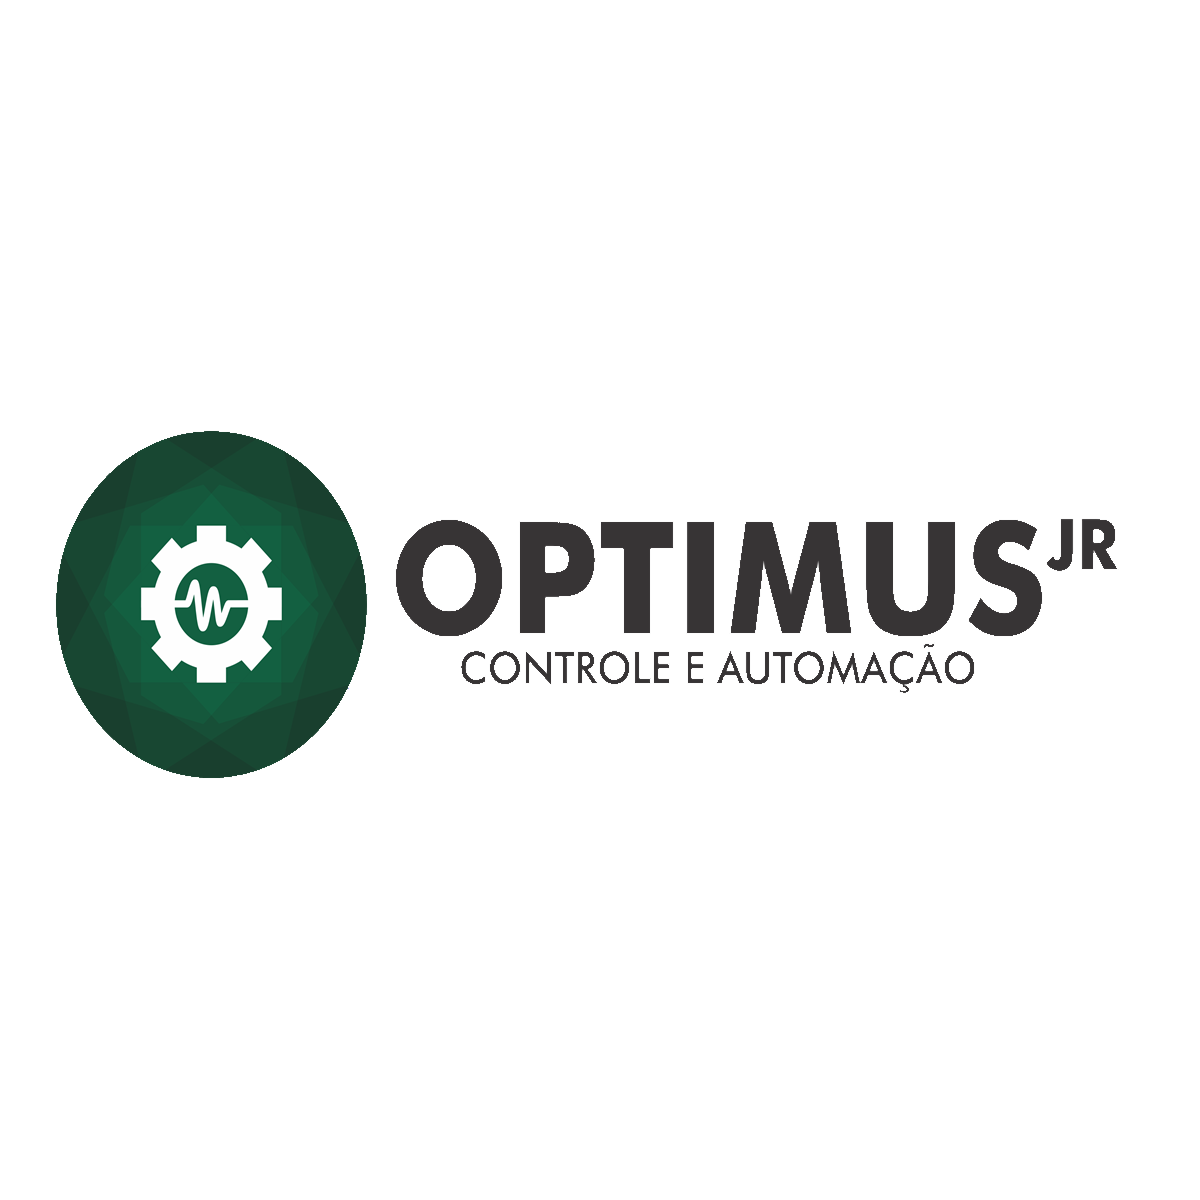 OPTIMUS Jr. abre processo seletivo de 2019.2 com vagas para estudantes do BI em C&T